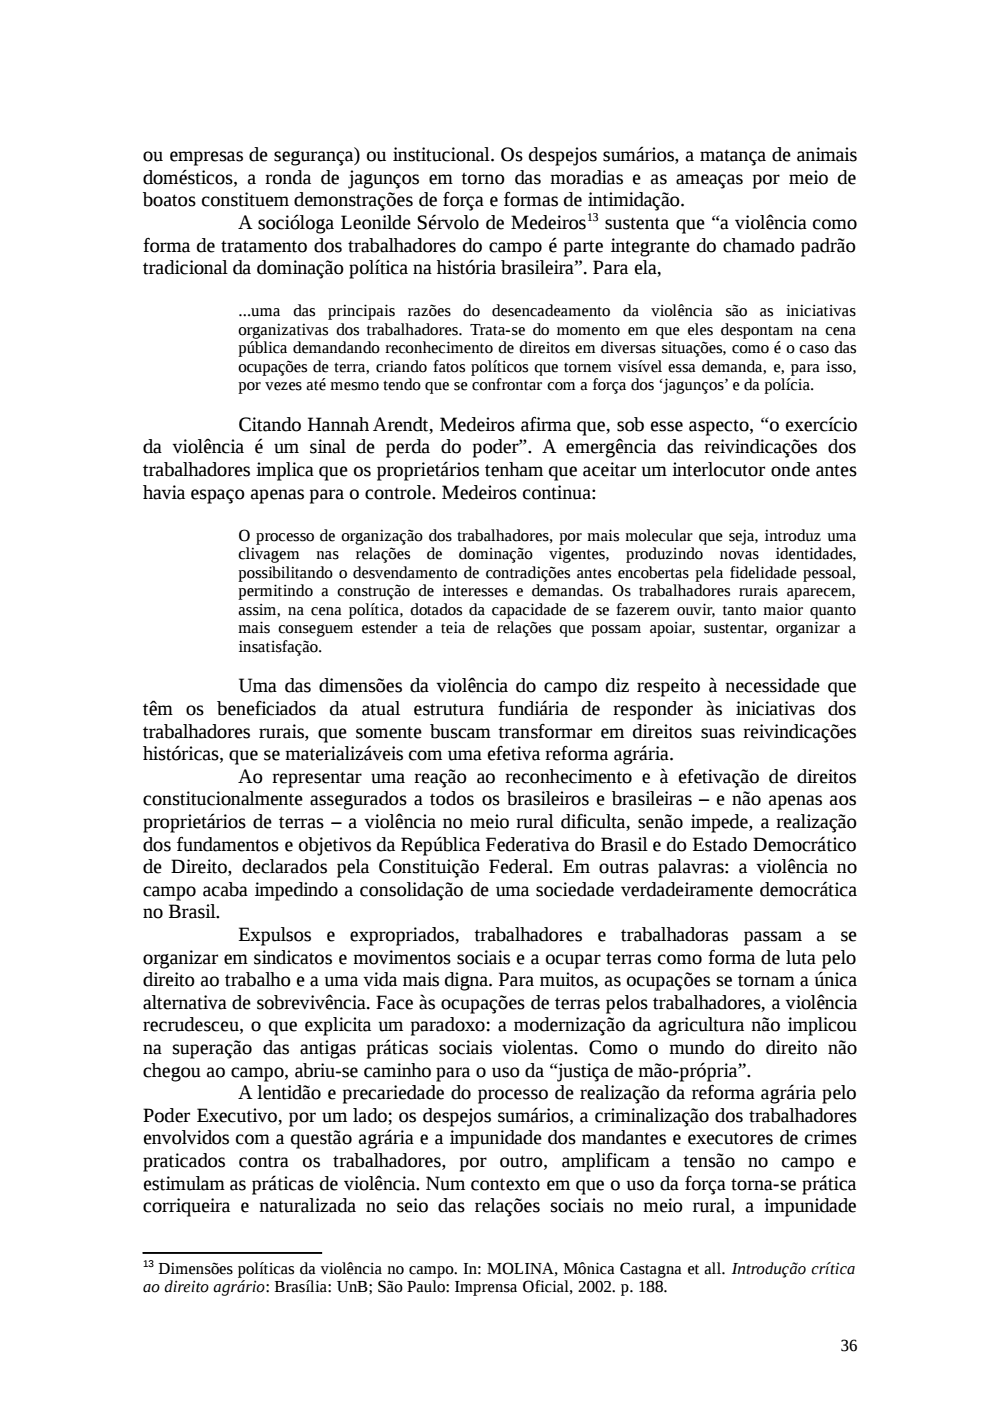 Page 36 from Relatório final da comissão